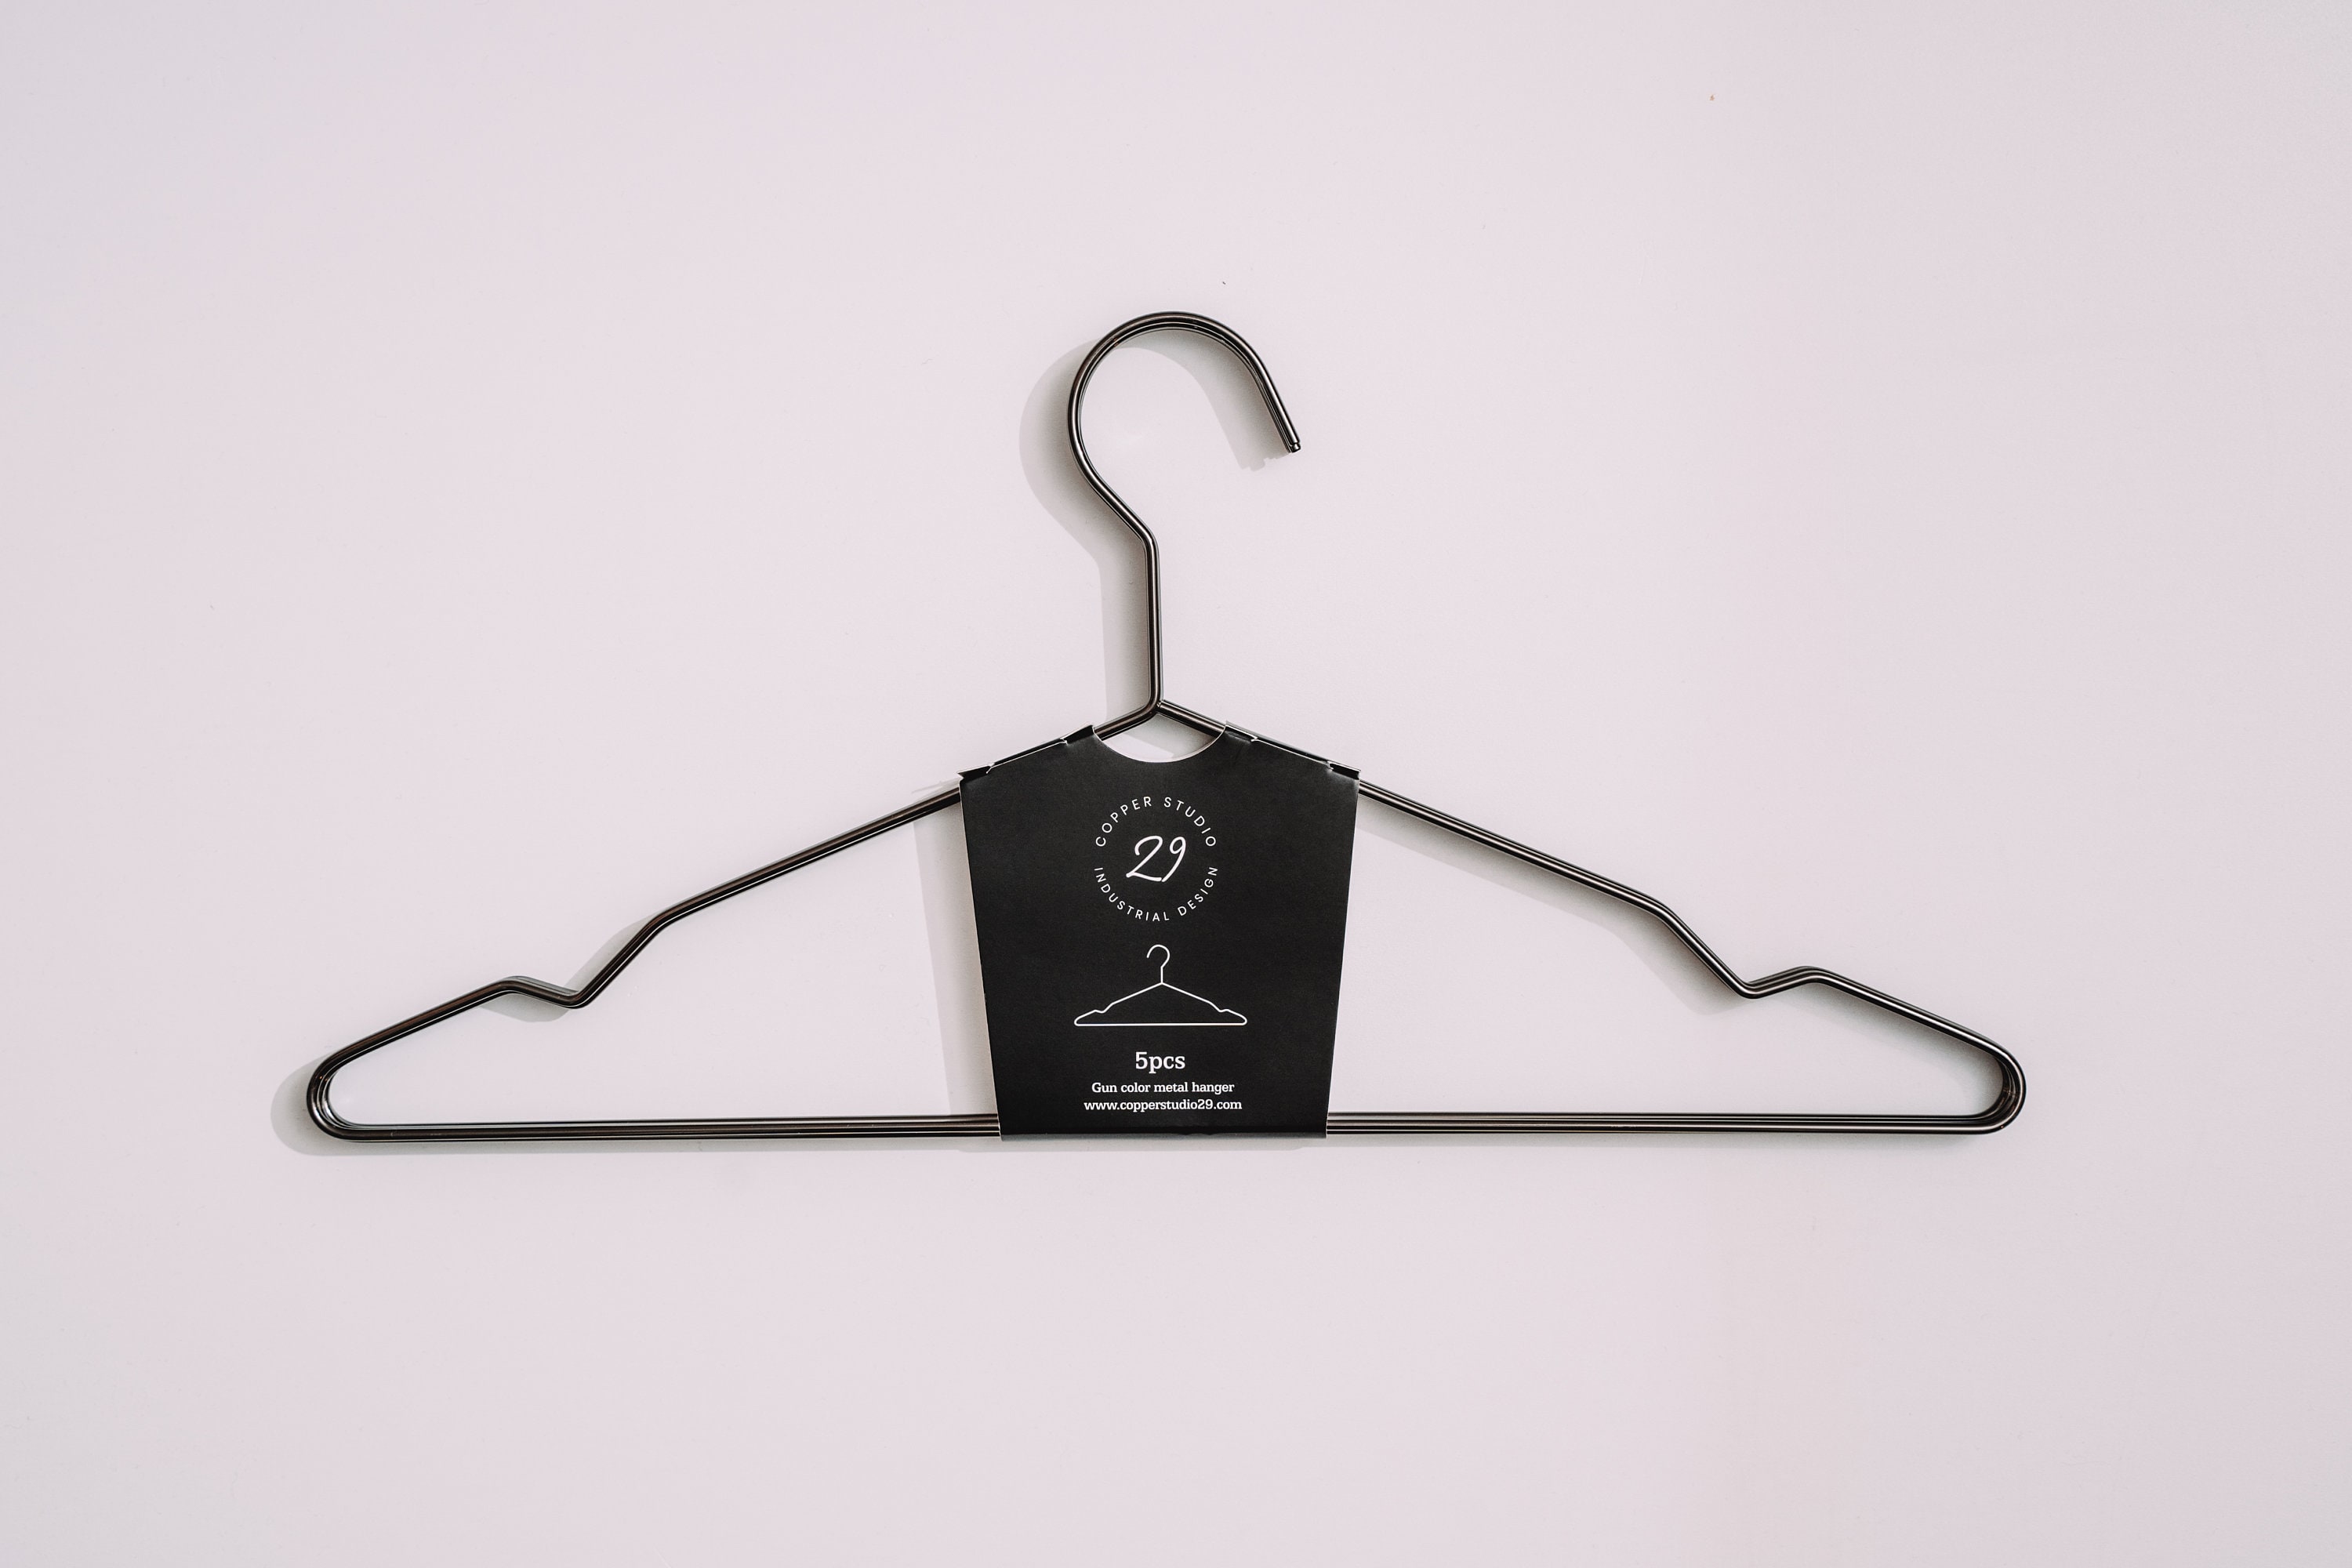 Wire Coat Hangers Set of 5/10/20 Black Clothes Hangers Metal Wire Hangers 